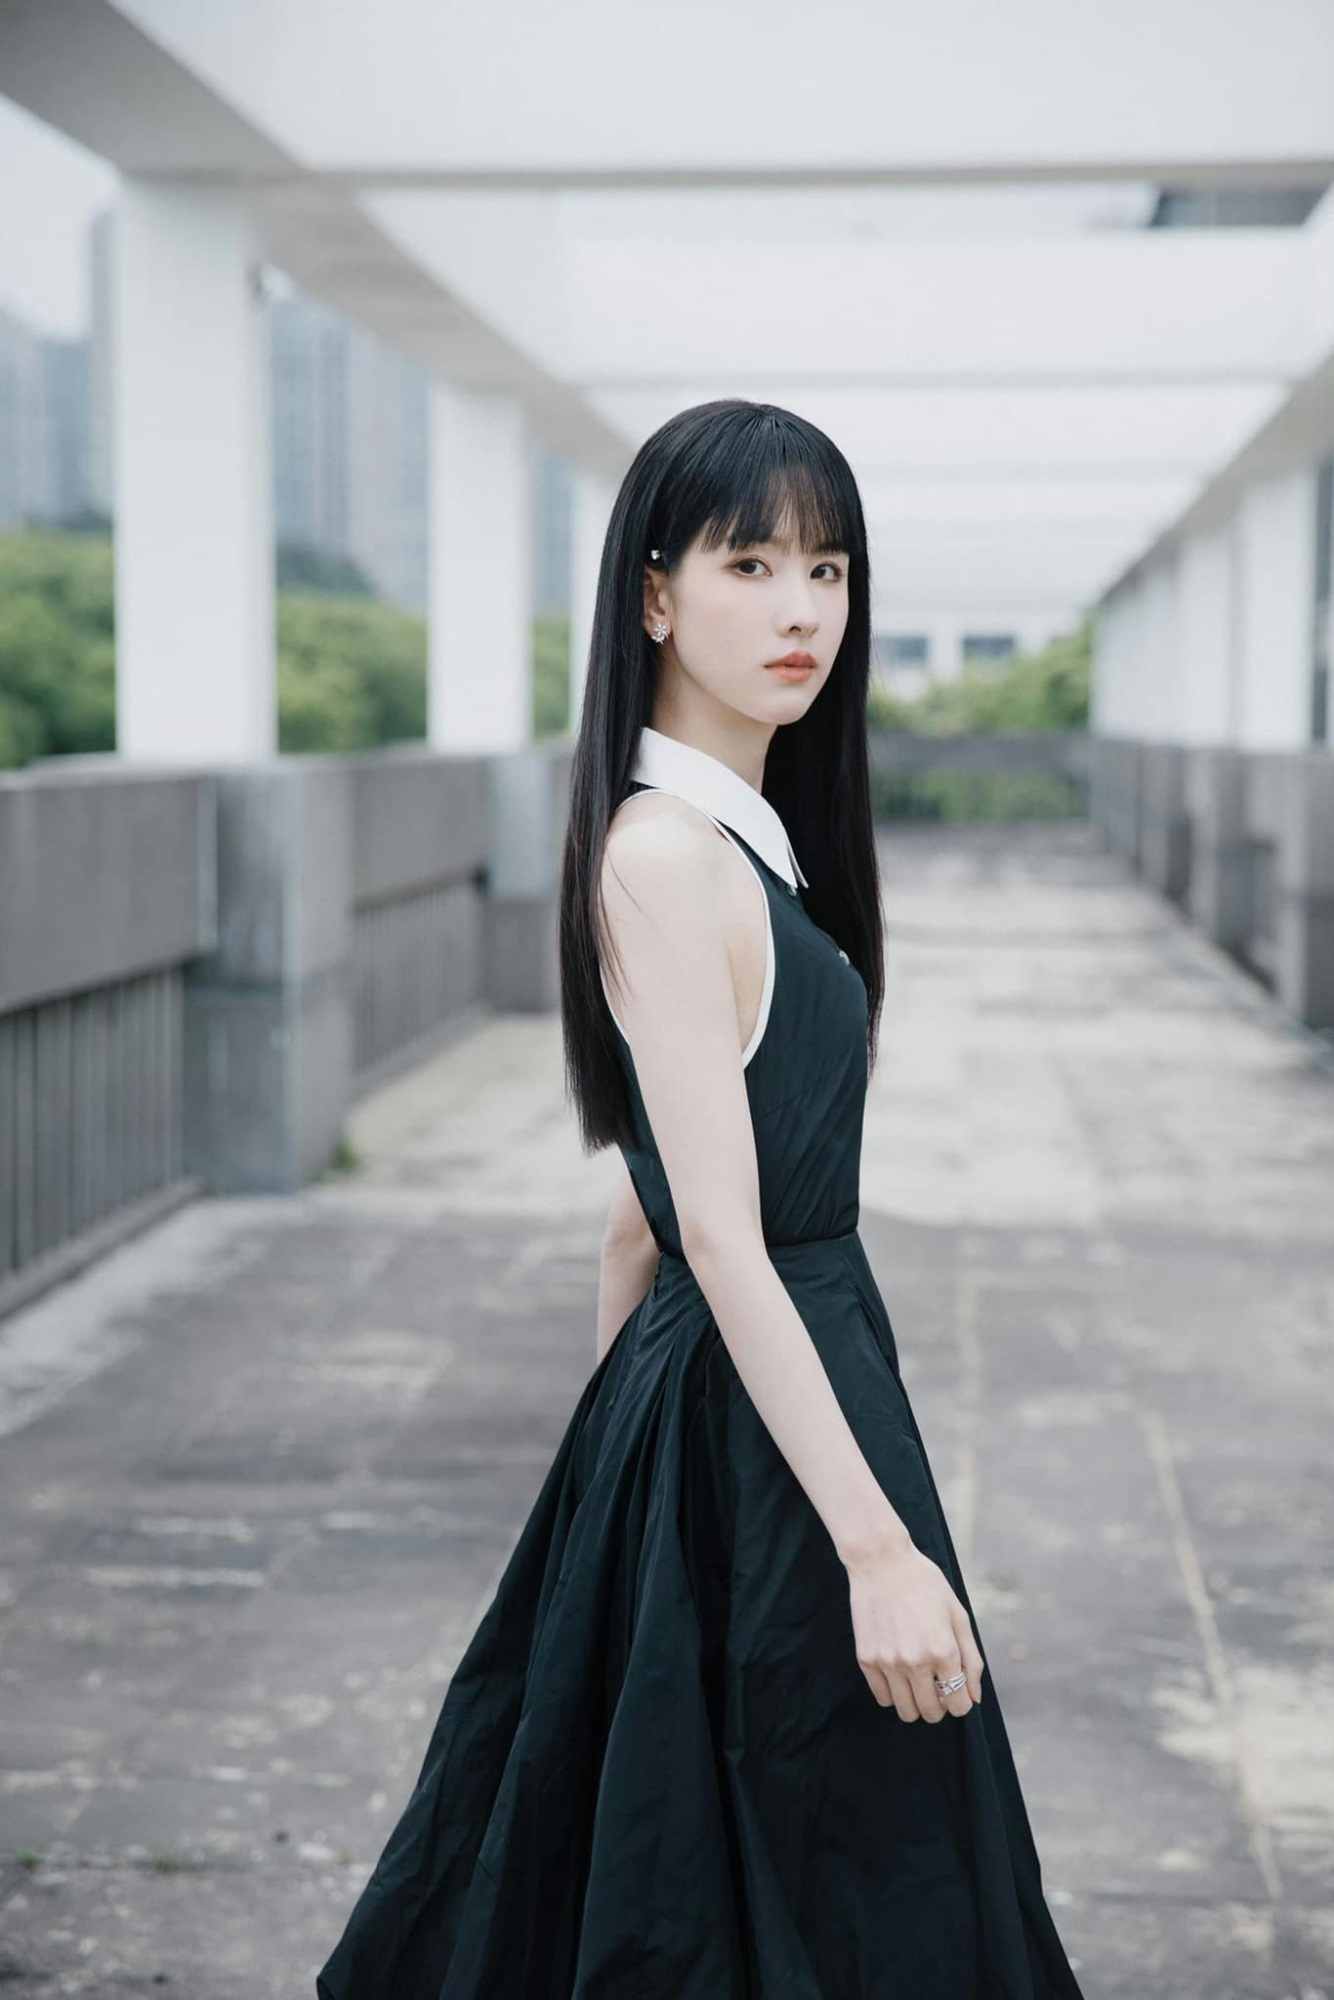 Tóc mới của Trần Đô Linh trong buổi quảng bá phim sắp chiếu được ví như 'nữ sinh gieo rắc nỗi kinh hoàng trong học đường' của manga Nhật Bản - Ảnh 7